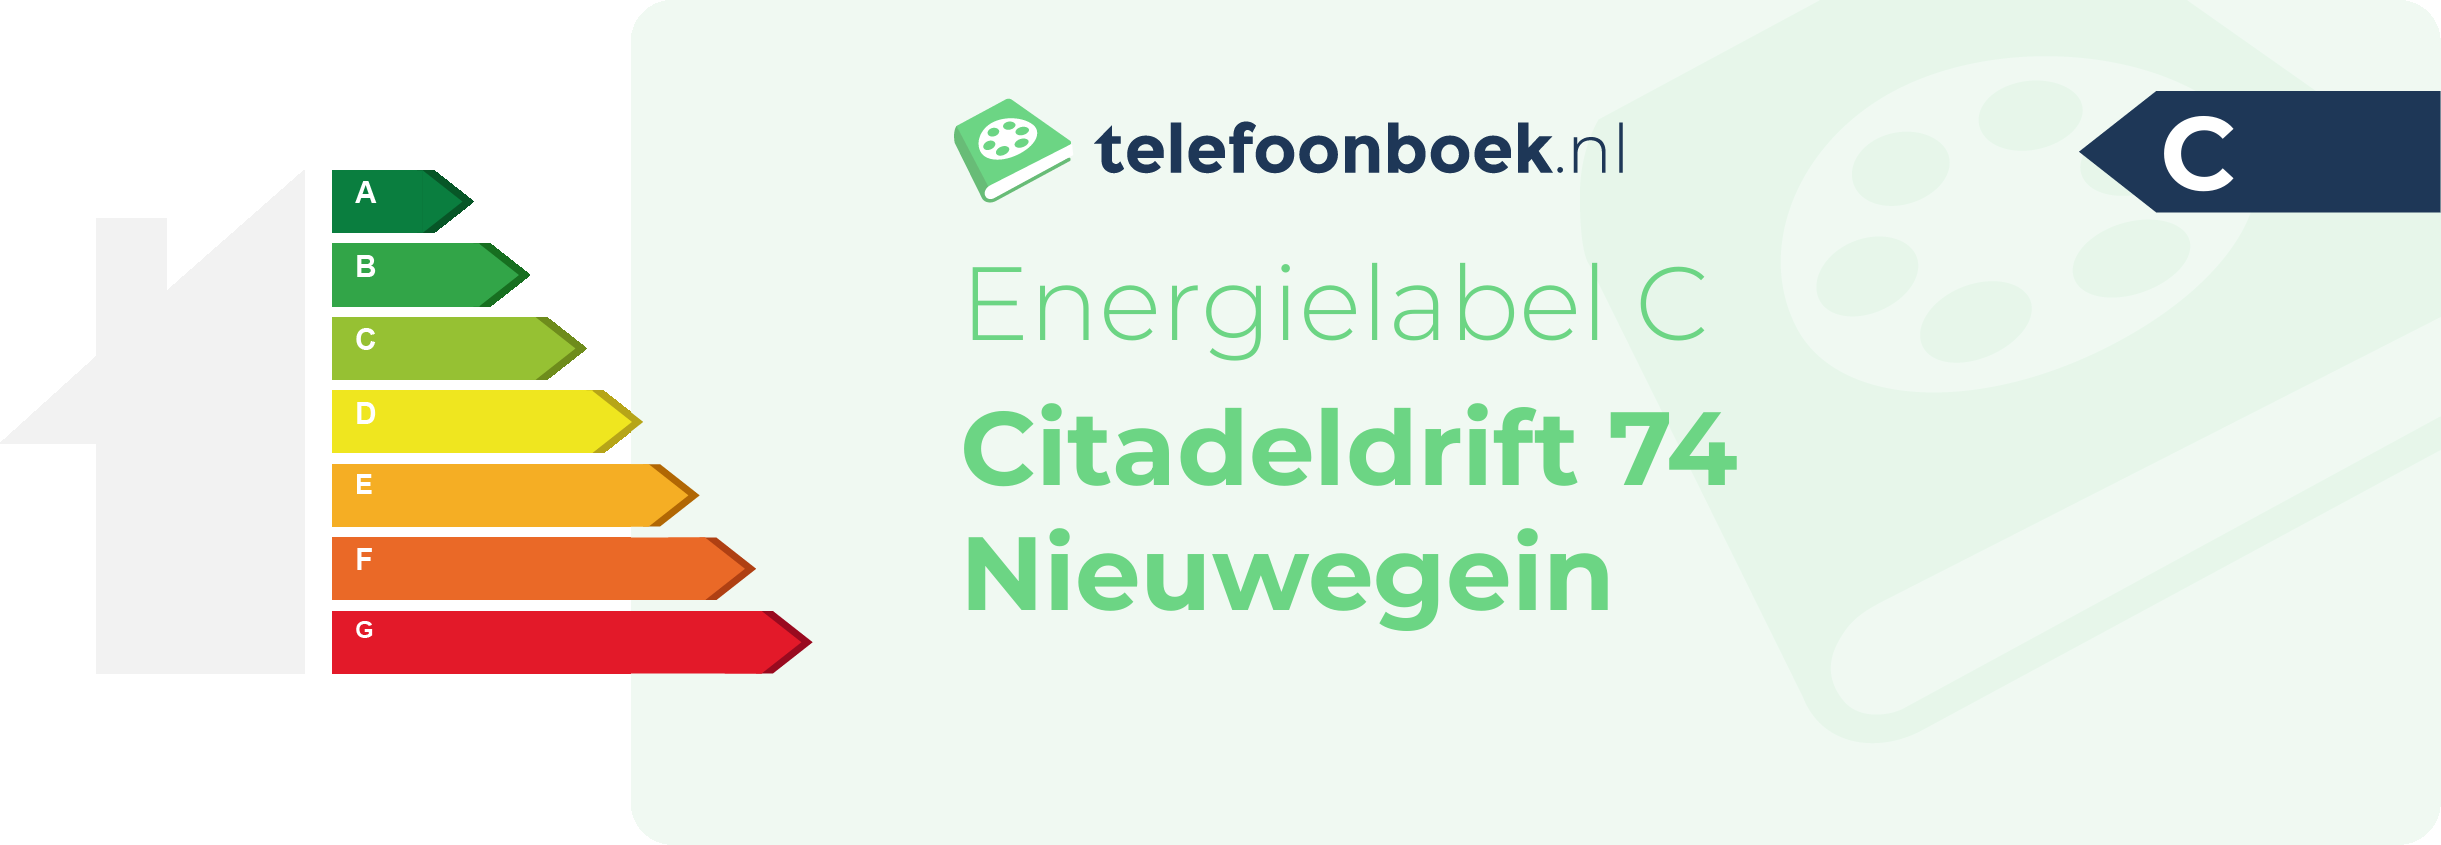 Energielabel Citadeldrift 74 Nieuwegein